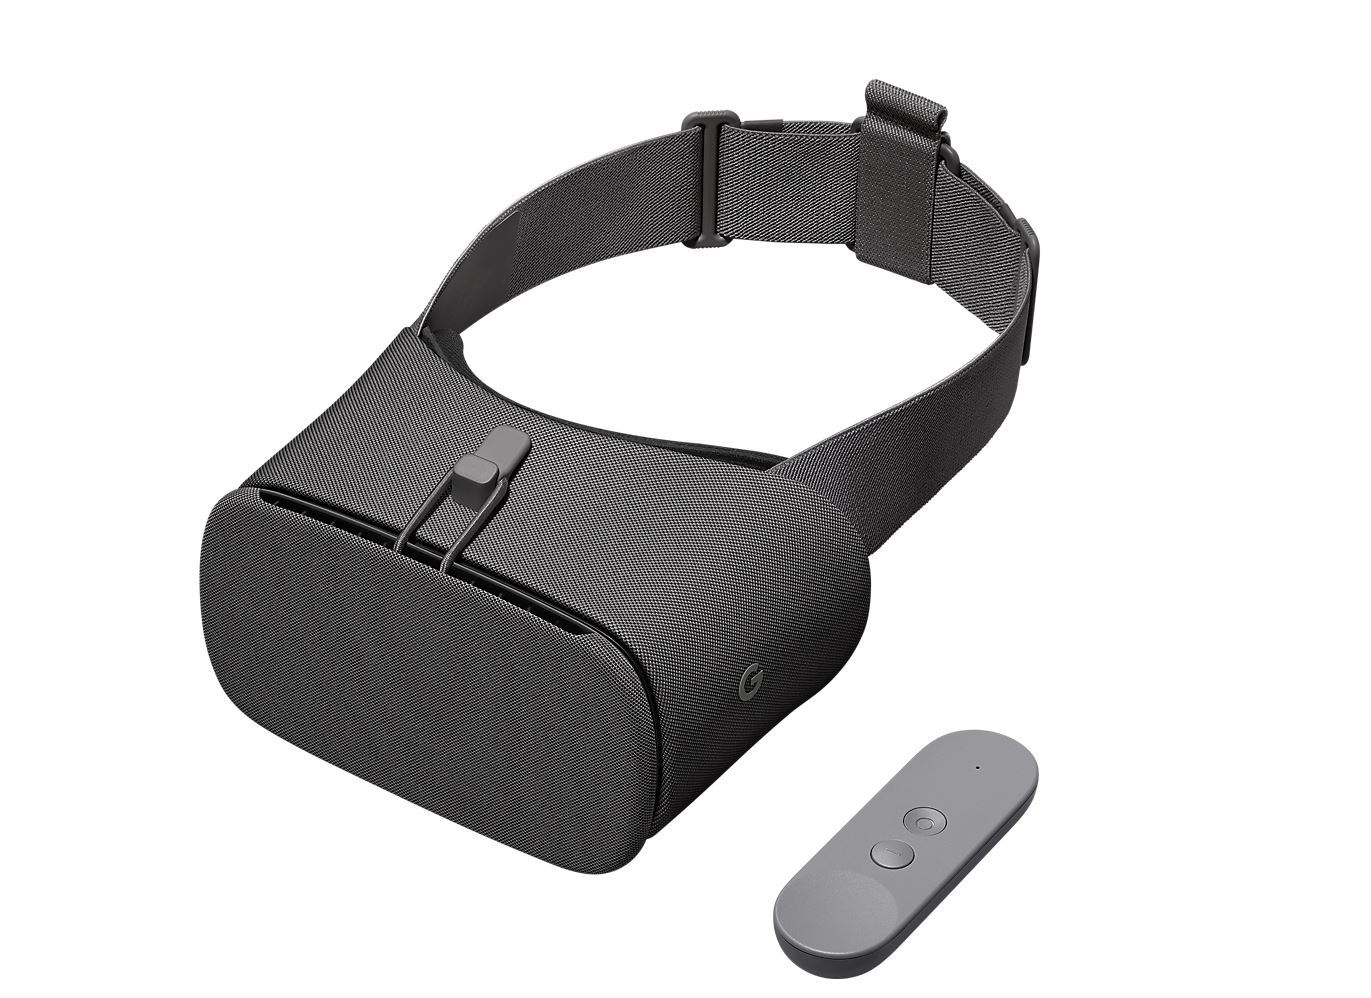  Para ahli berpikir ApplePerangkat itu bisa mirip dengan headset Google Daydream VR tetapi mendukung augmented reality